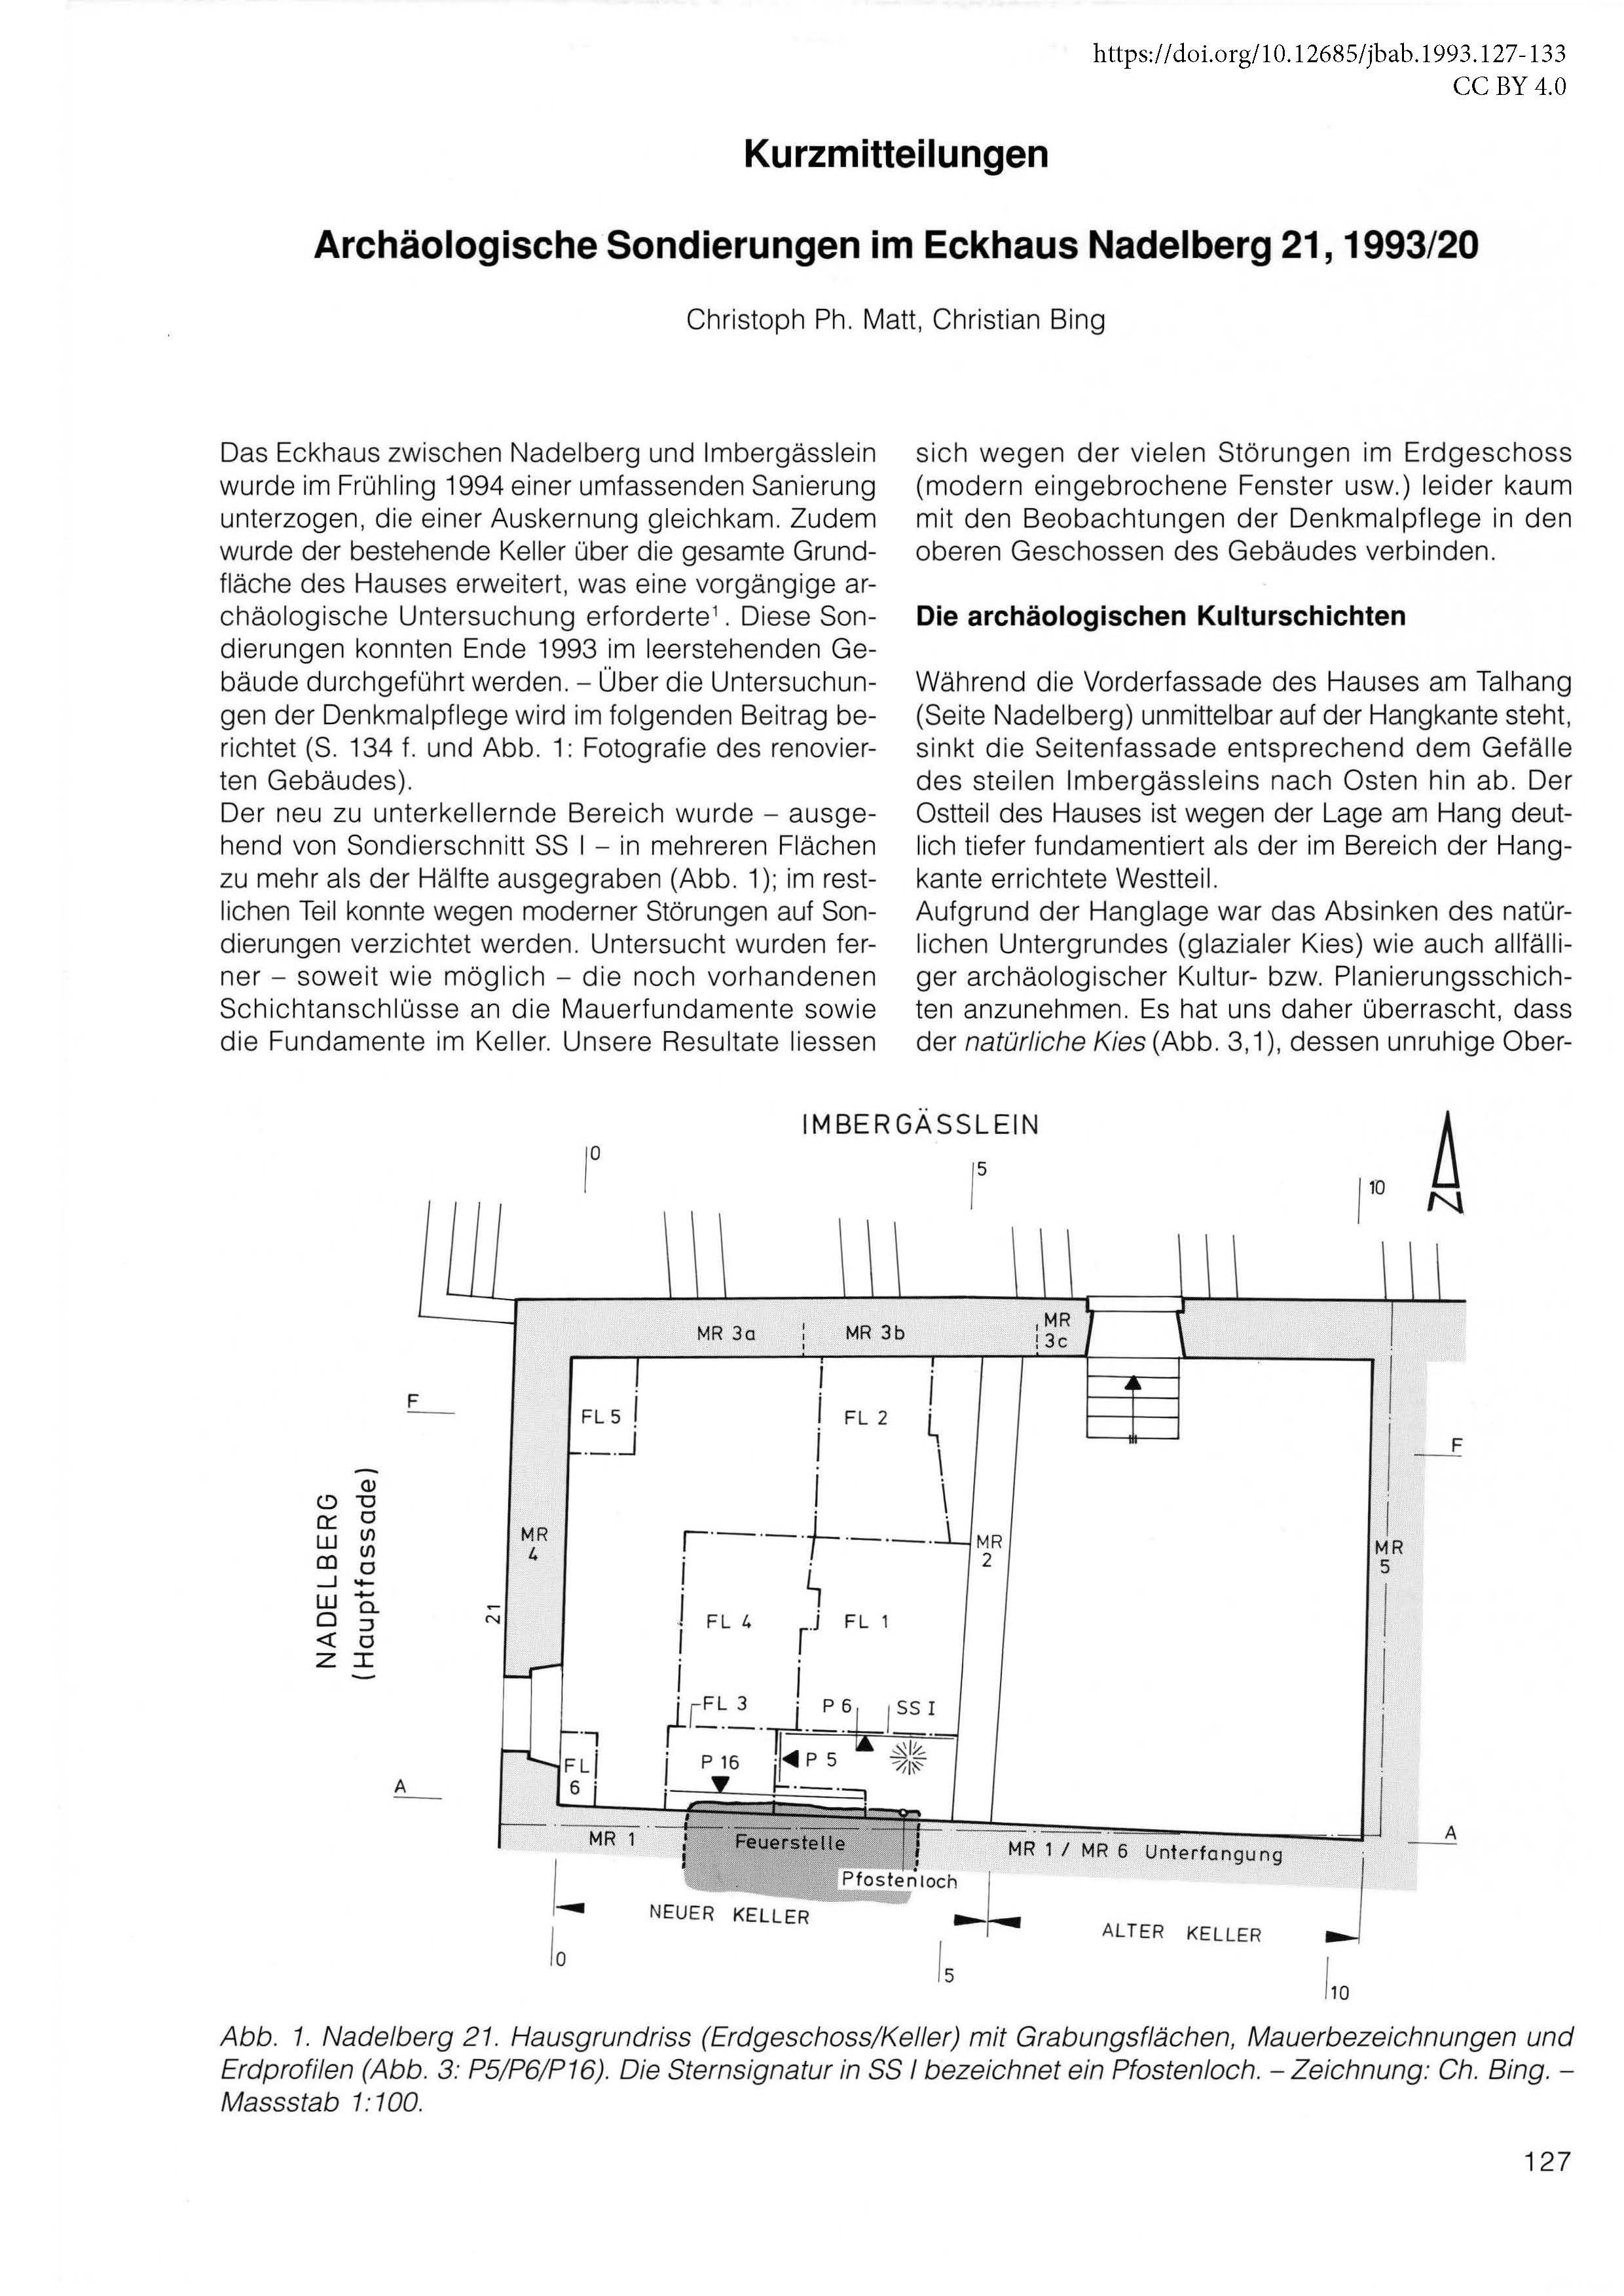 Erste Seite der Kurzmitteilung über die Archäologische Sondierungen im Eckhaus Nadelberg 21